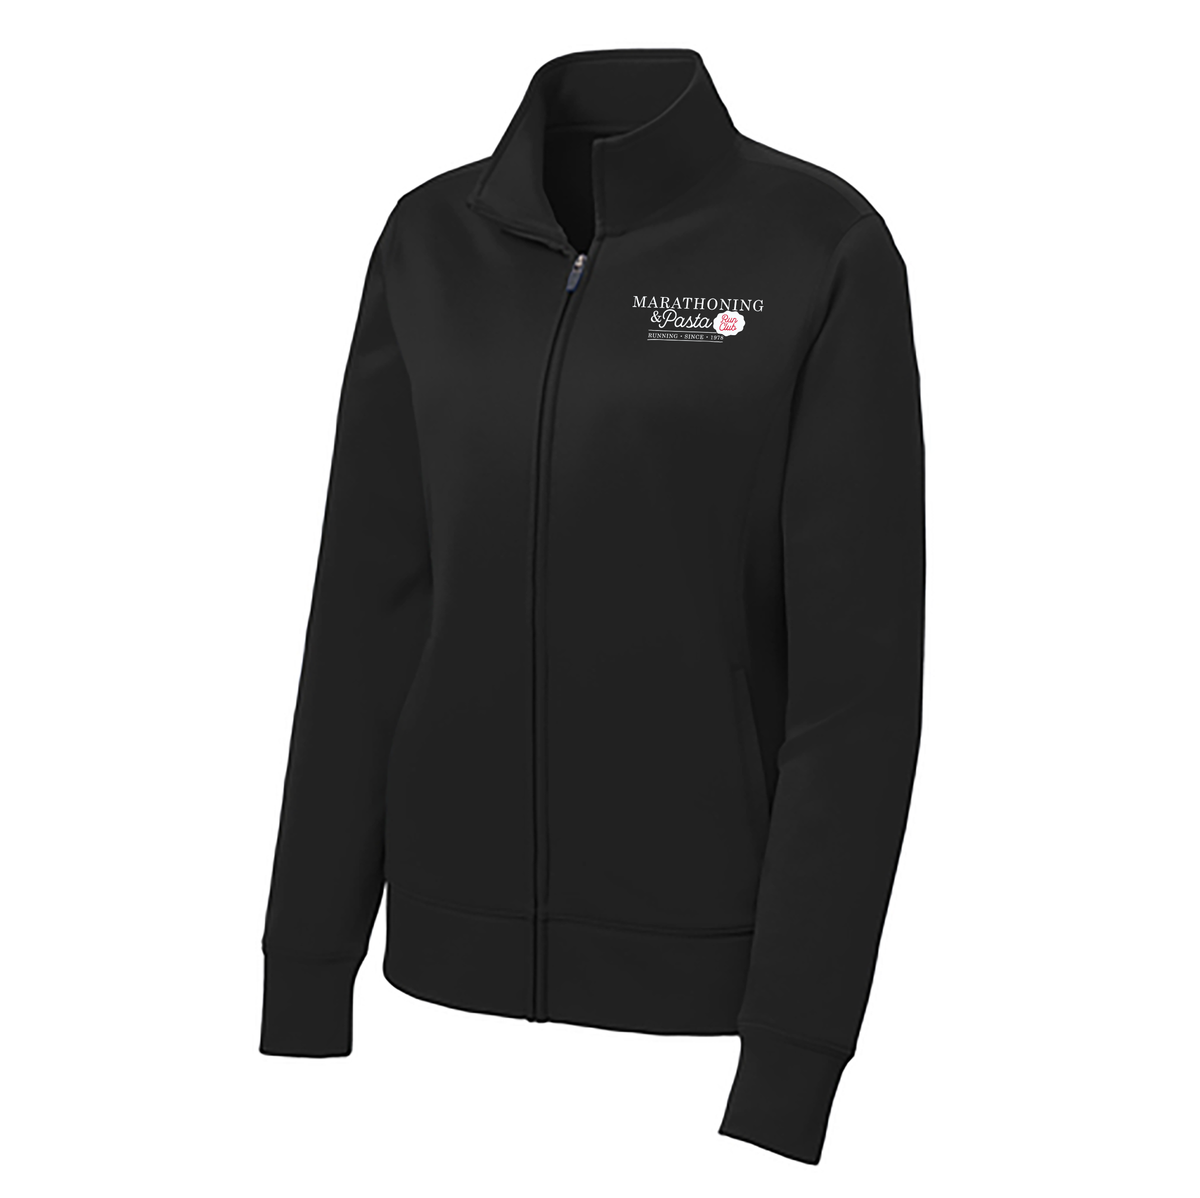 Marathoning and Pasta Club Ladies Sport-Wick Fleece Full-Zip Jacket